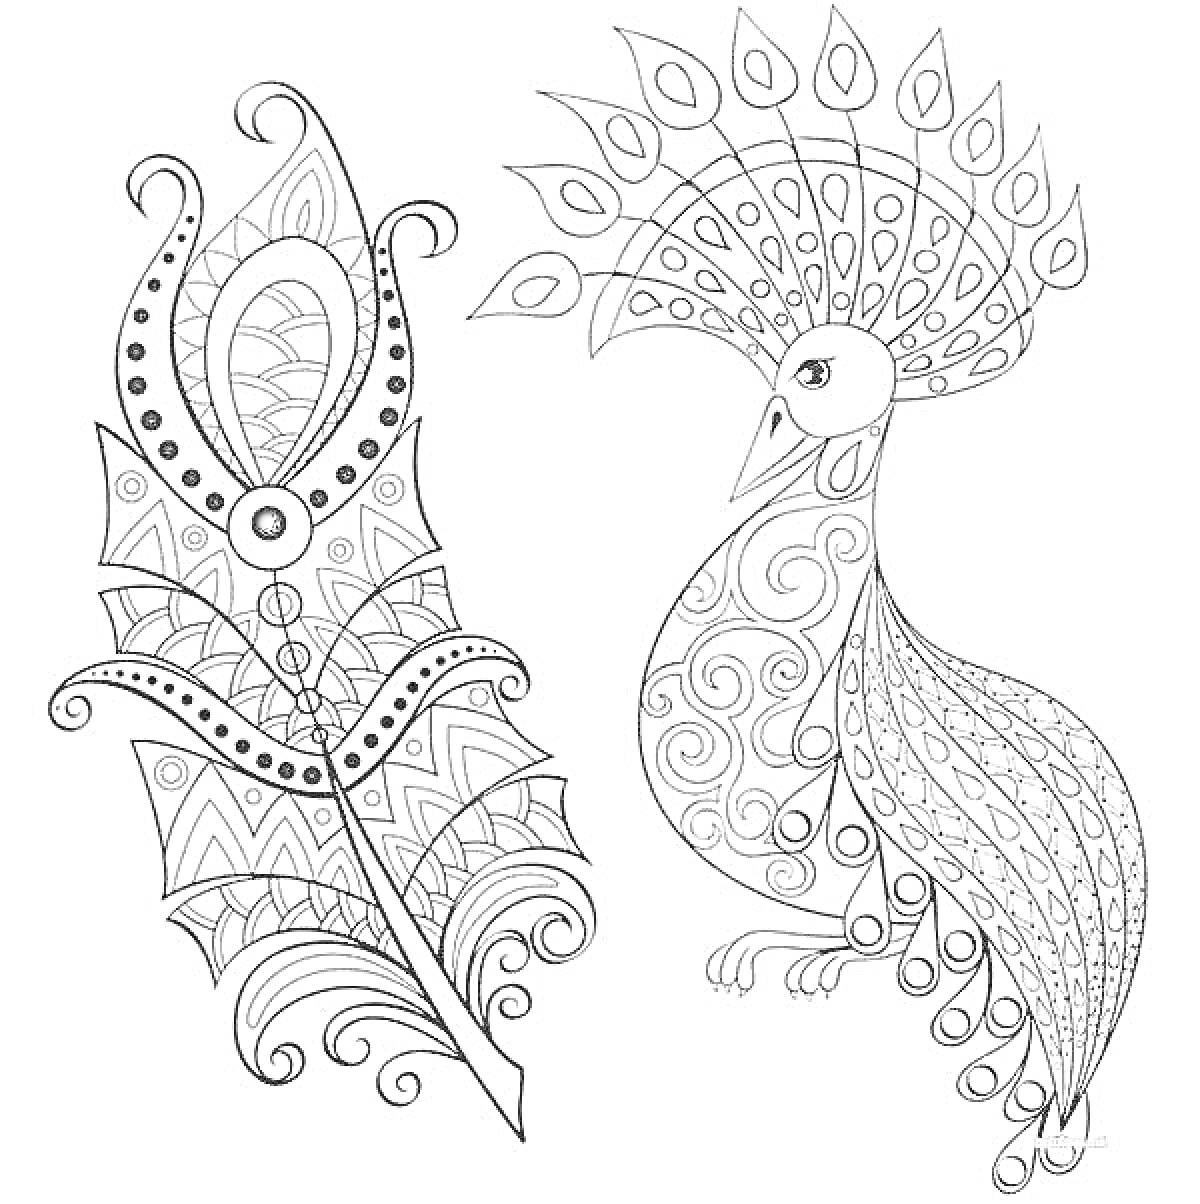 Раскраска Антистресс раскраска павлин с большим узорным пером и павлином с узорчатым хвостом